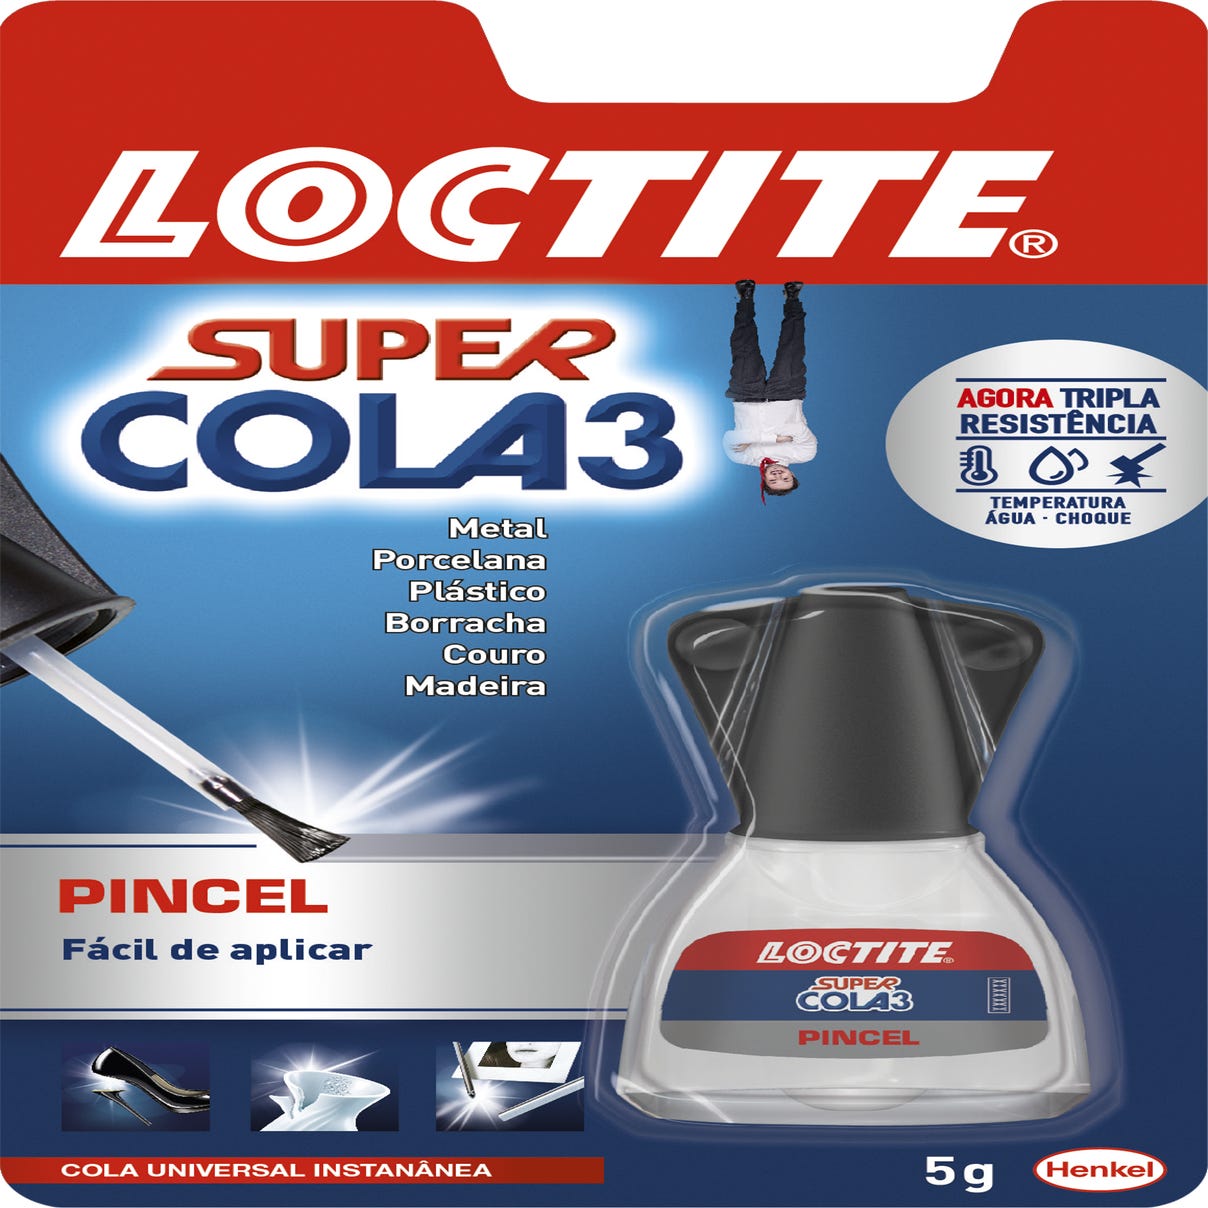 LOCTITE Super Glue-3 Pincel - Pegamento Instantáneo Líquido con